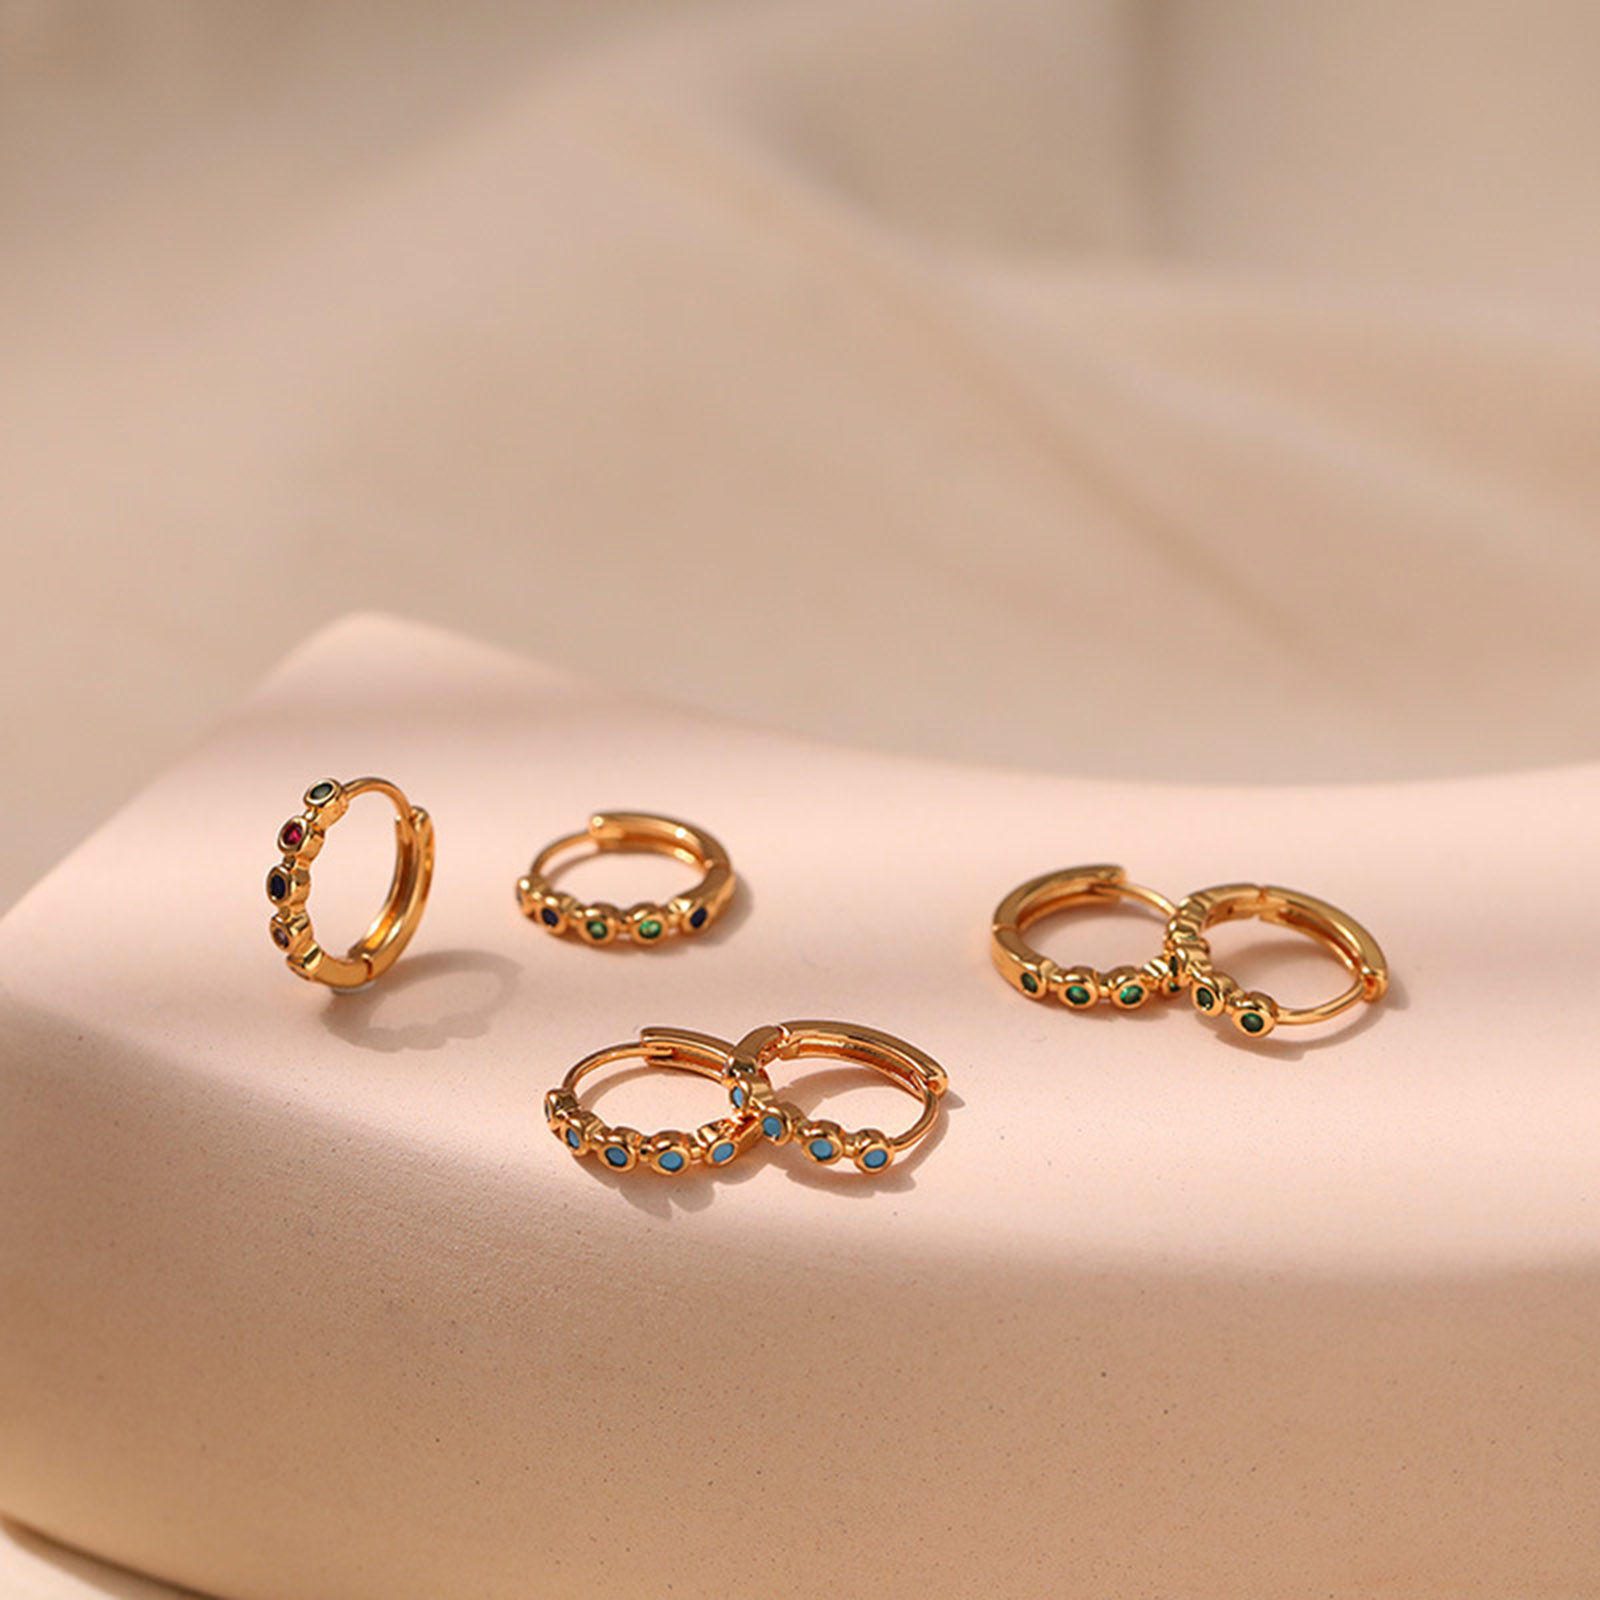 Bild von Hypoallergen Exquisit Stilvoll 18K Vergoldet Kupfer & Kubisch Zirkonia Hoop Ohrringe Für Frauen Geschenk zum Erwachsenwerden 1 Paar